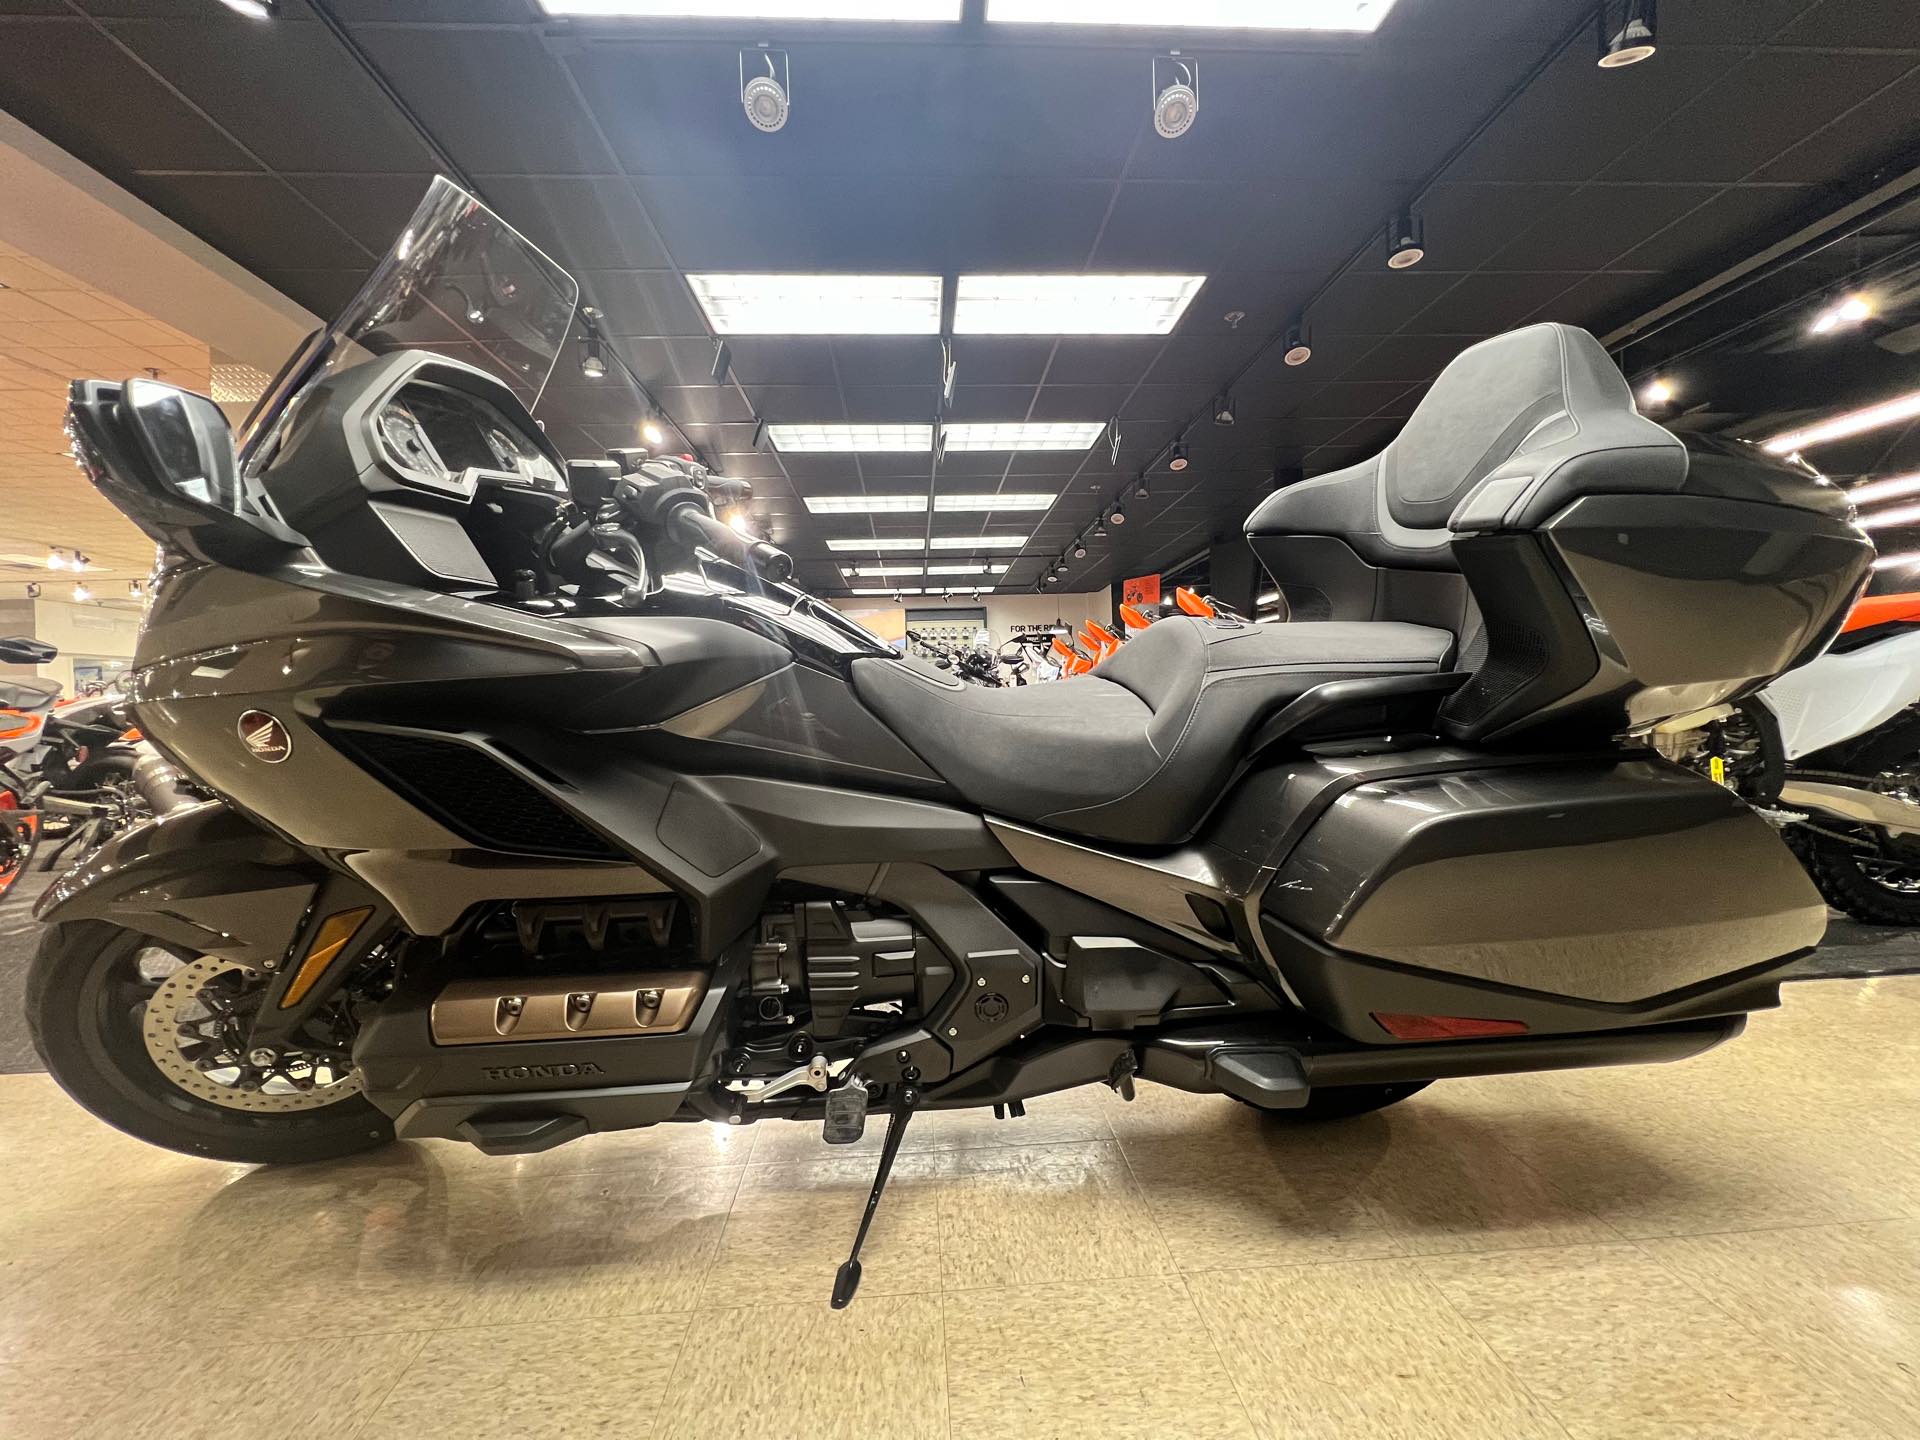 2024 Honda Gold Wing Tour Base at Sloans Motorcycle ATV, Murfreesboro, TN, 37129